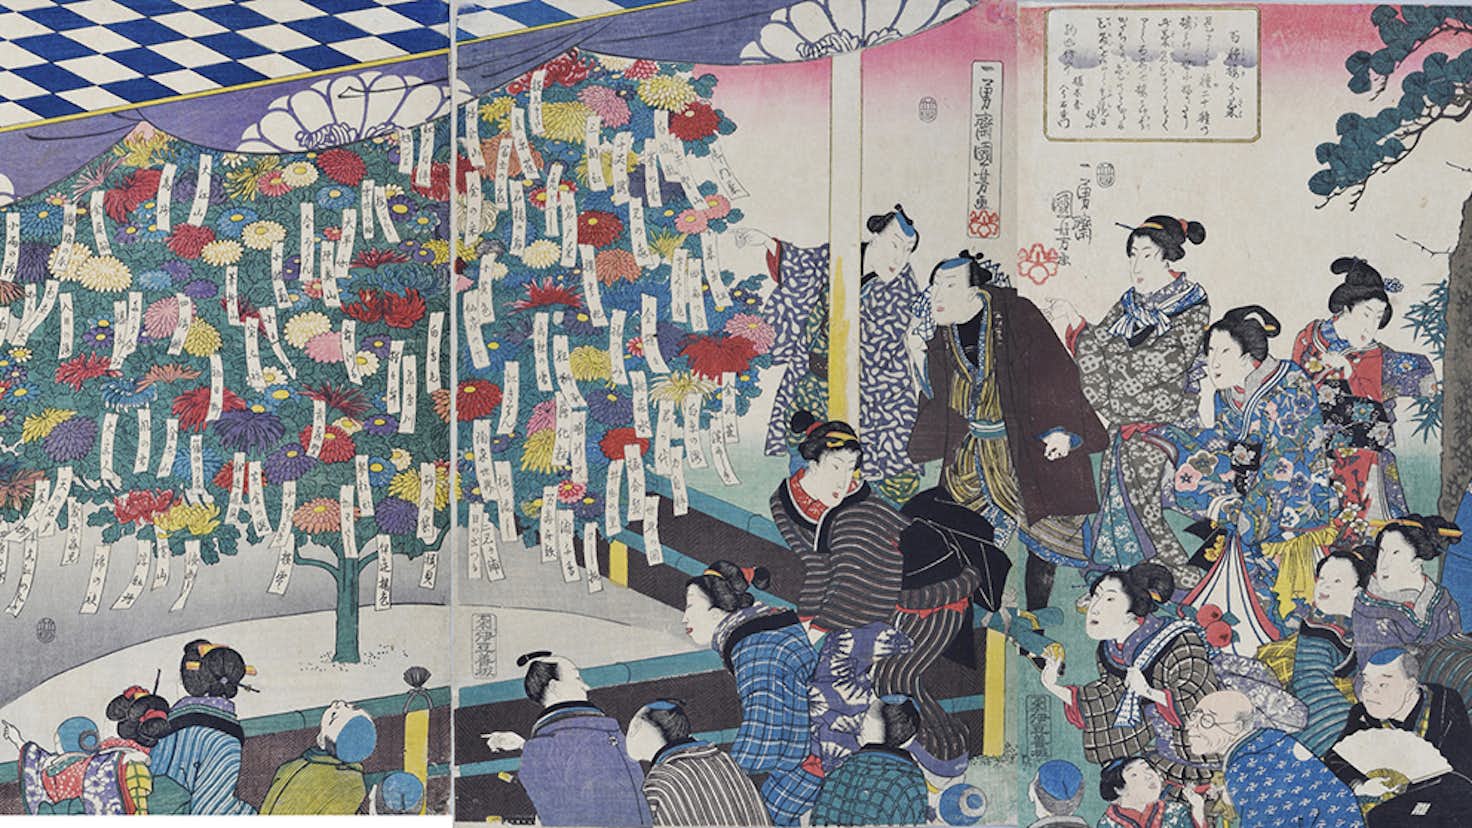 江戸の人々が熱中した園芸の様相とは 江戸の園芸熱 浮世絵に見る庶民の草花愛 が開催中 美術手帖